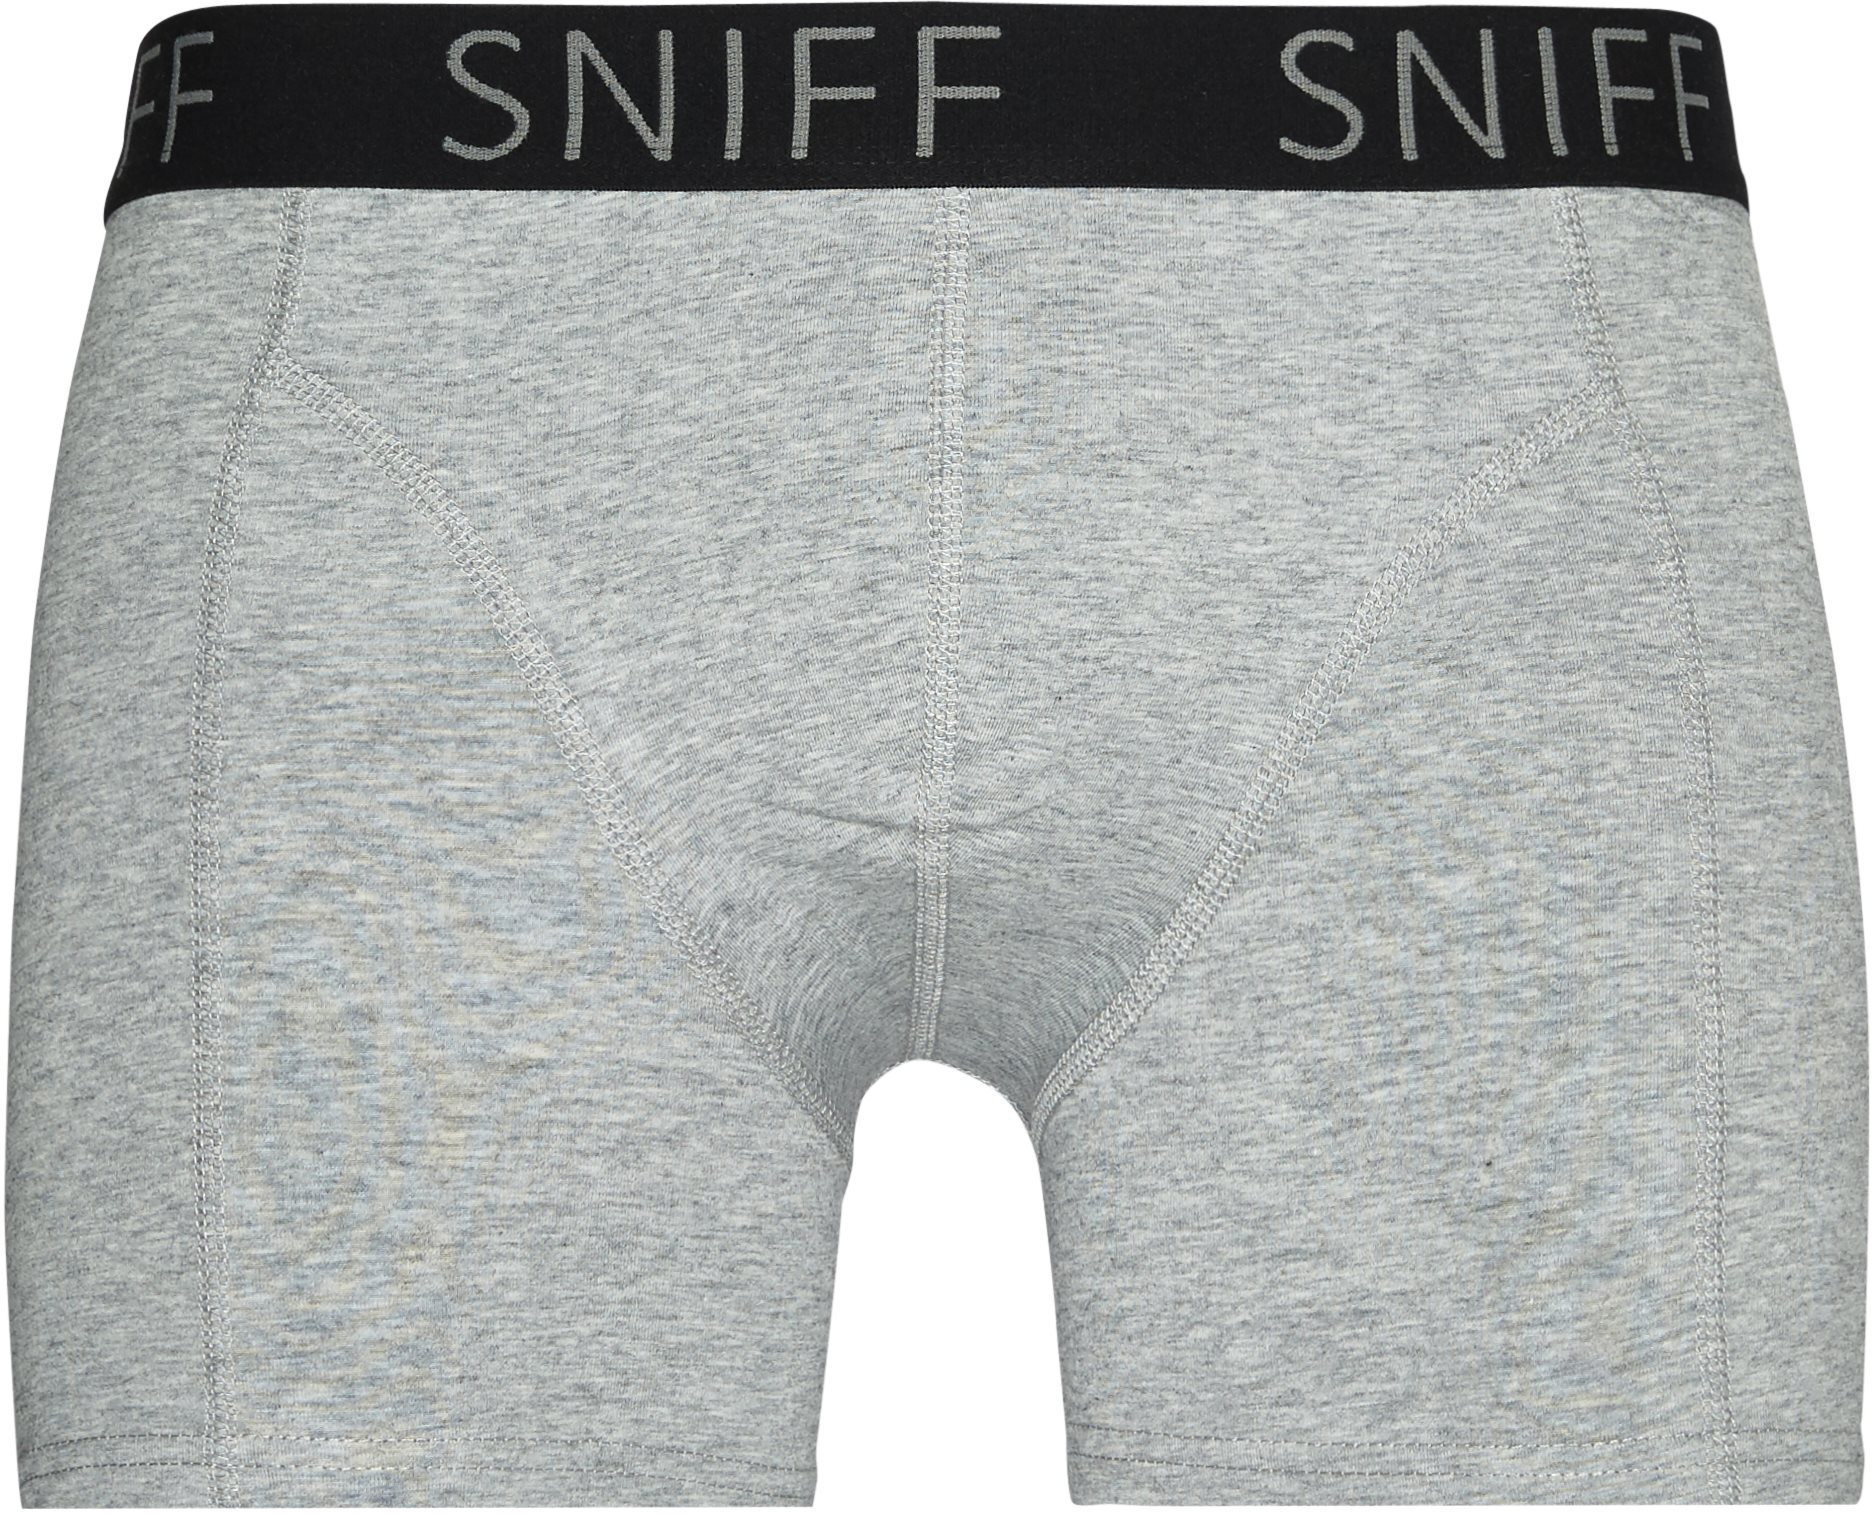 Sniff Underkläder TIGHTS 88010 Grå